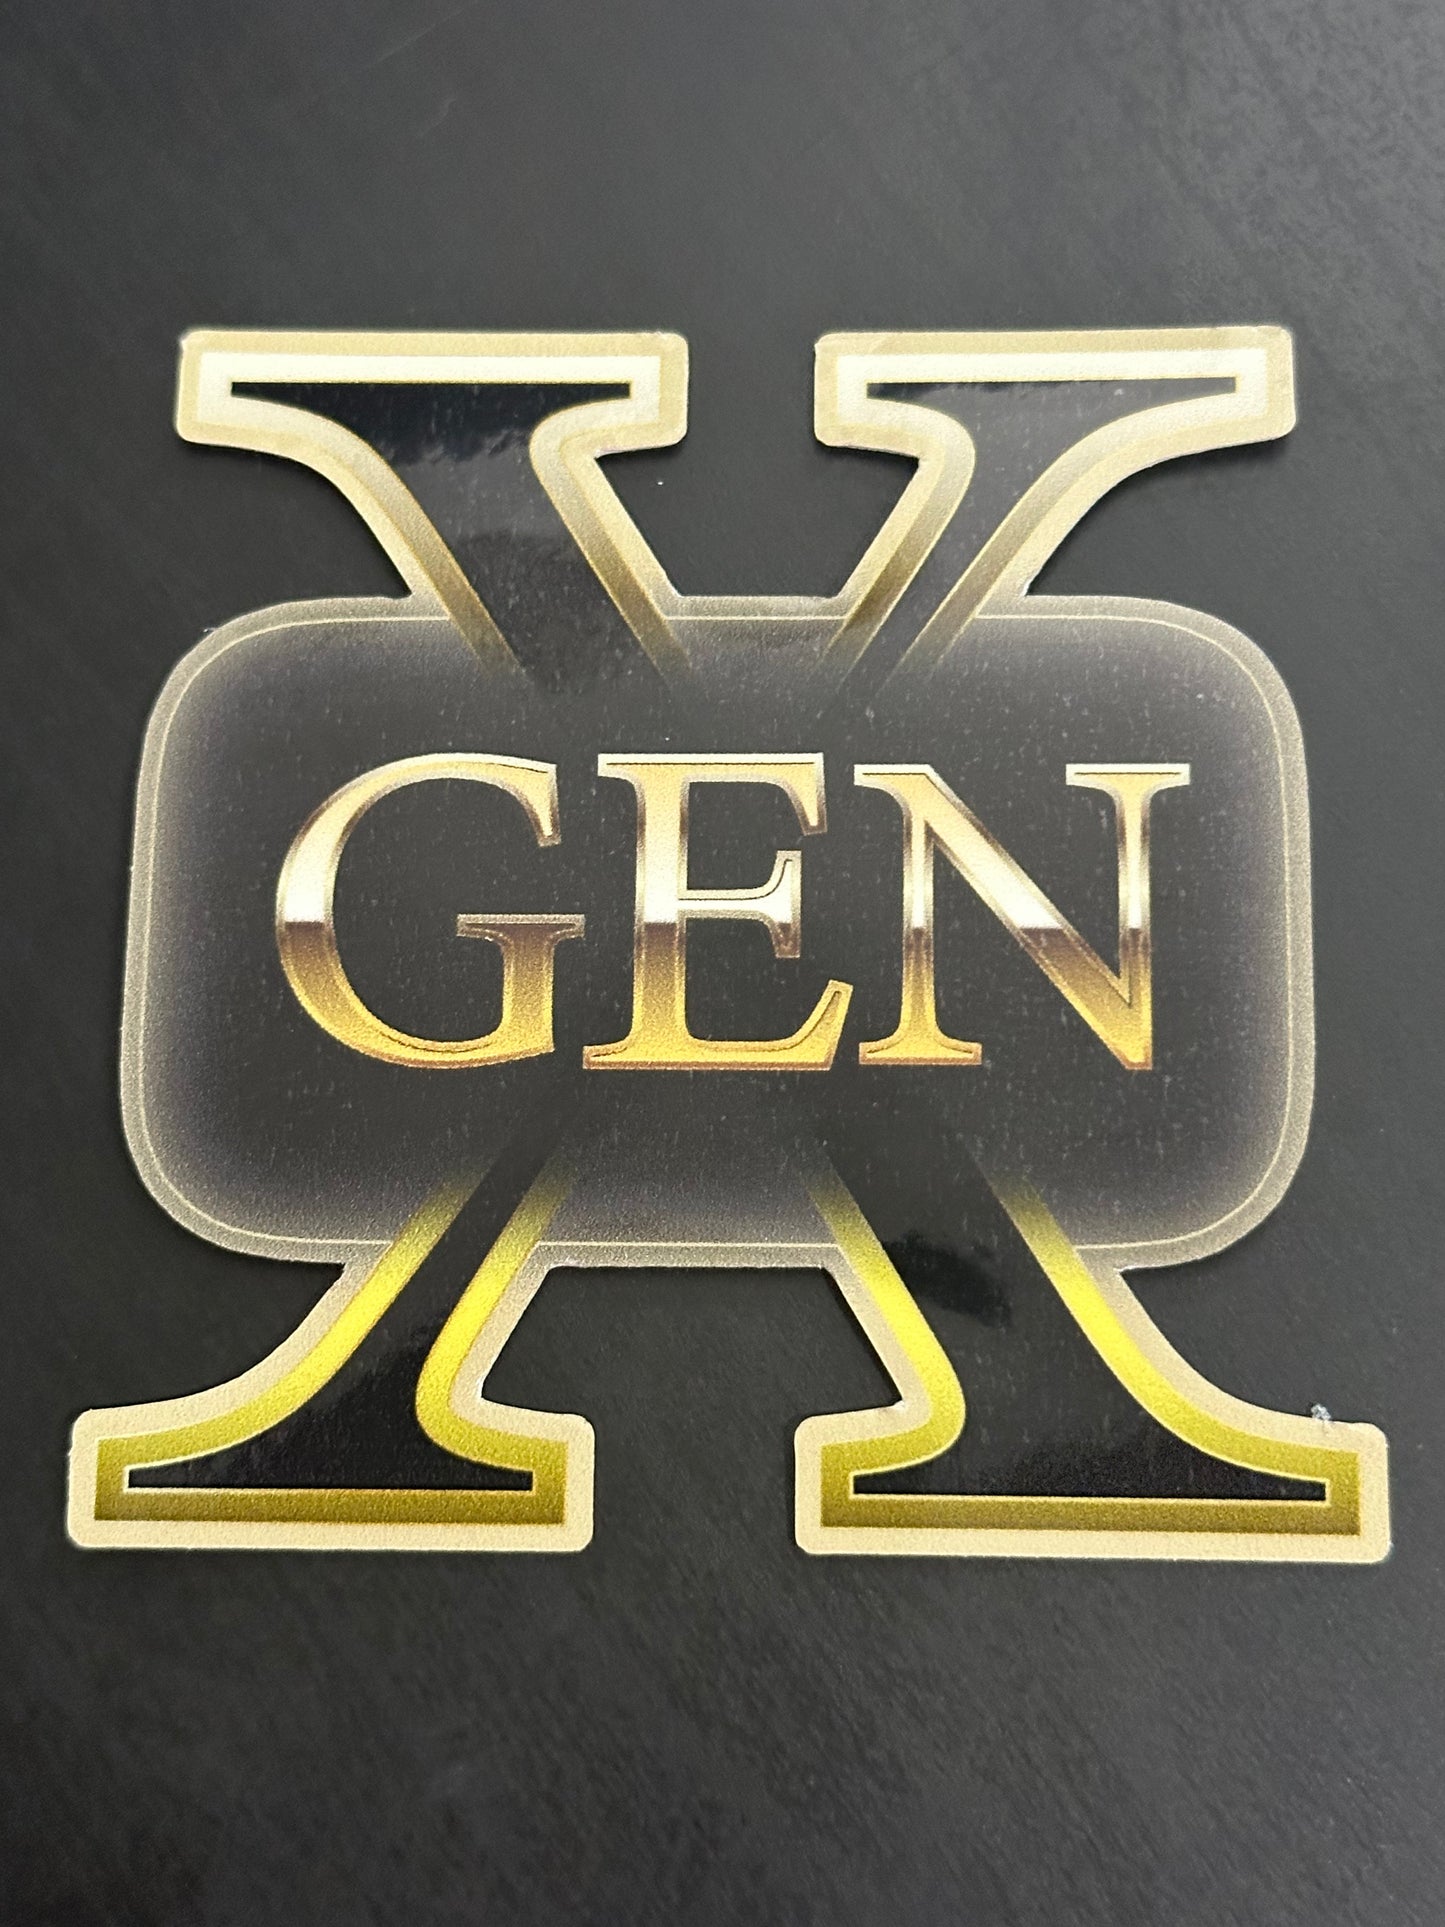 Gen X Gold 3.3x3 inch Vinyl Sticker